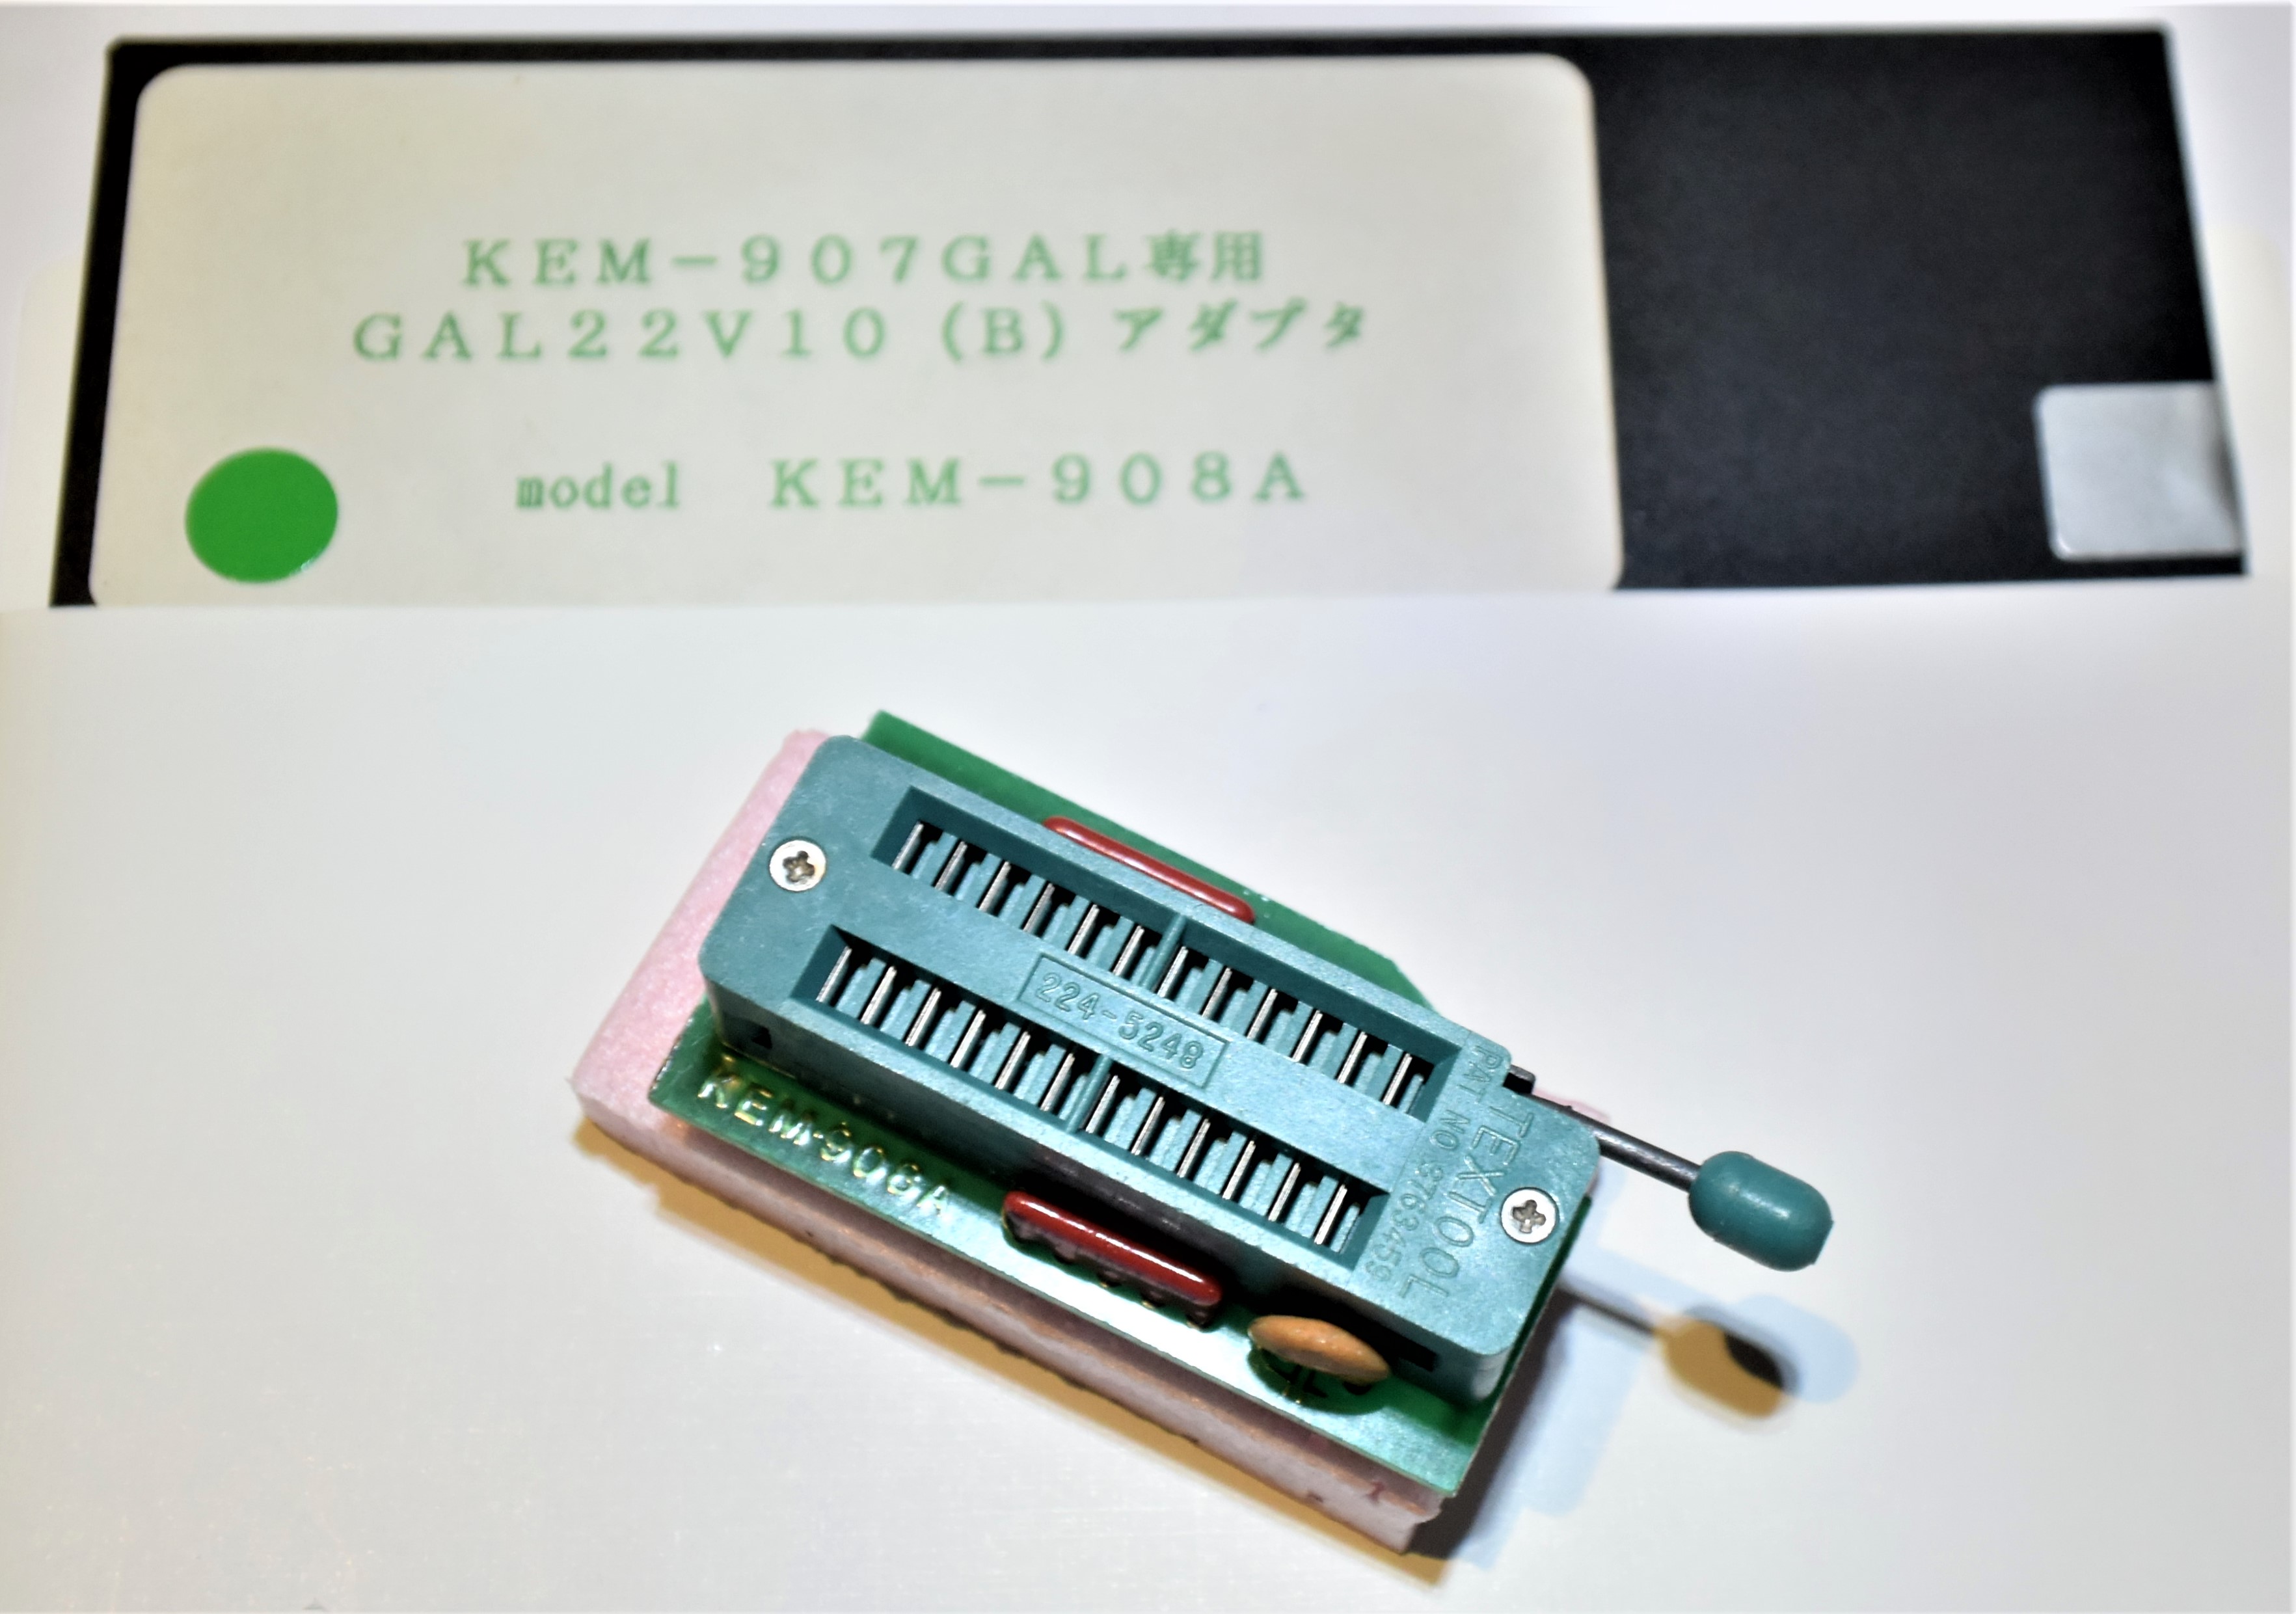 KEM-908A　　KEM-907GAAL専用